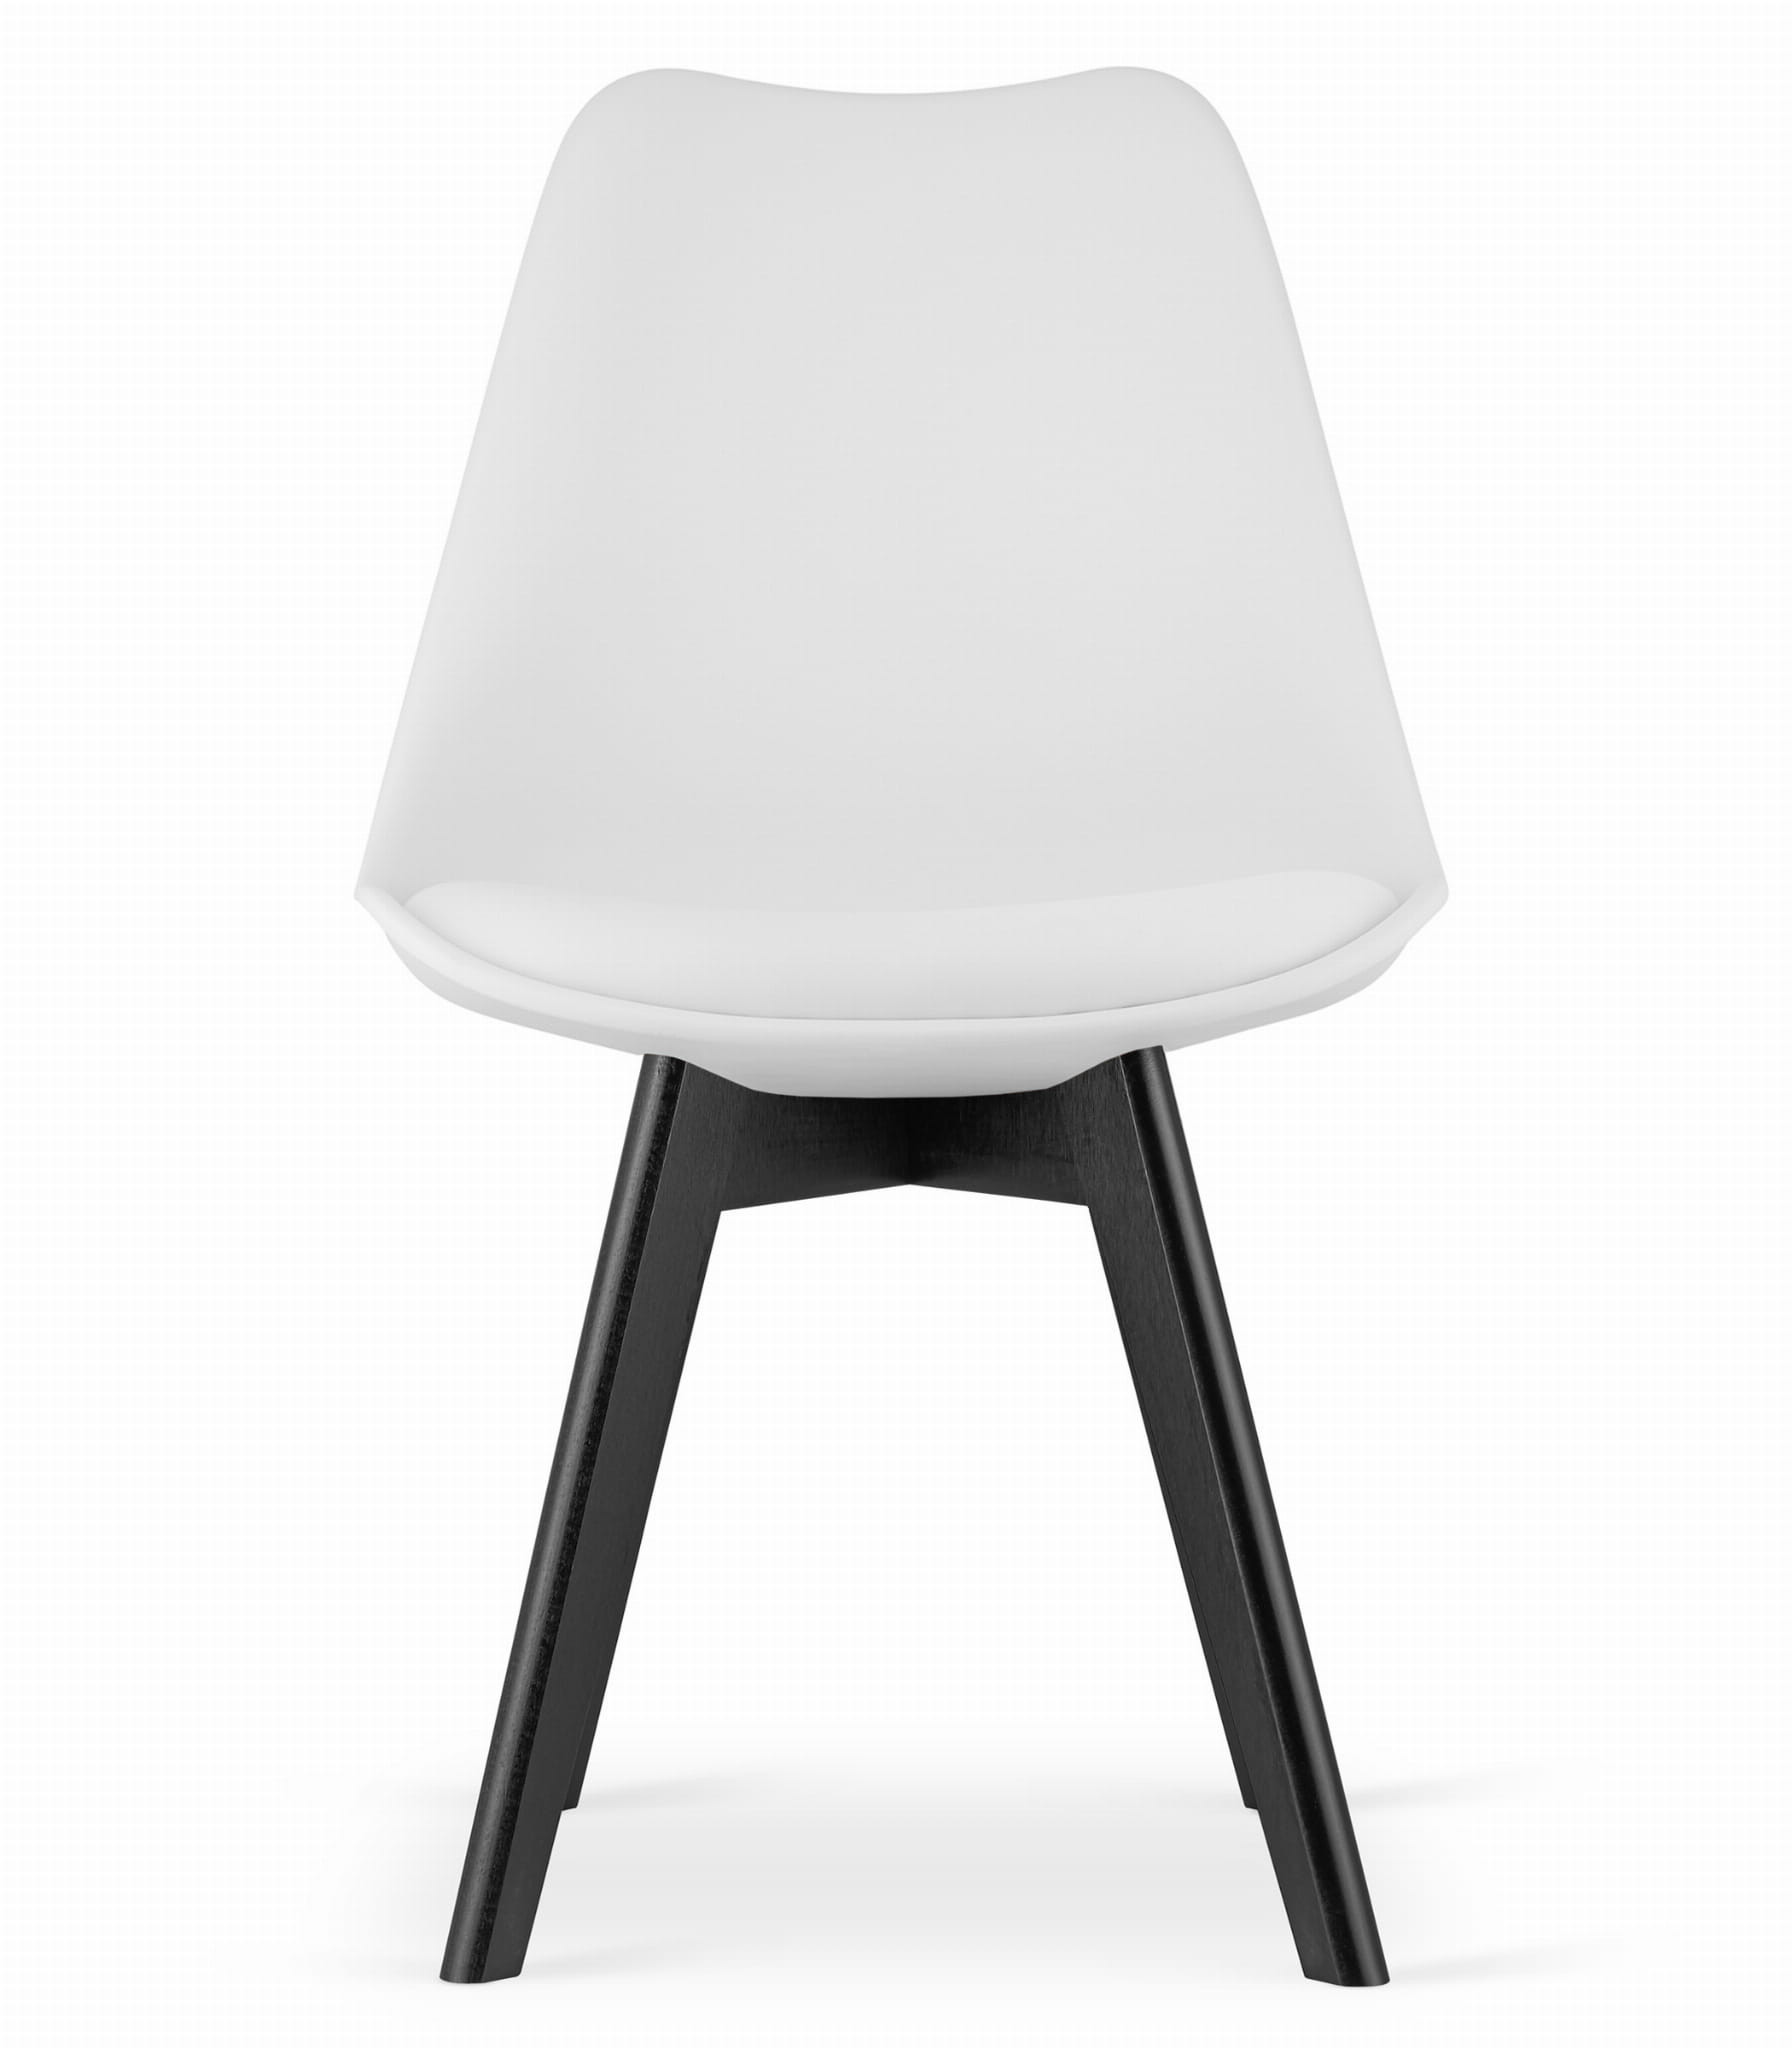 Set dvou jídelních židlí MARK - bílé (černé nohy) 2ks